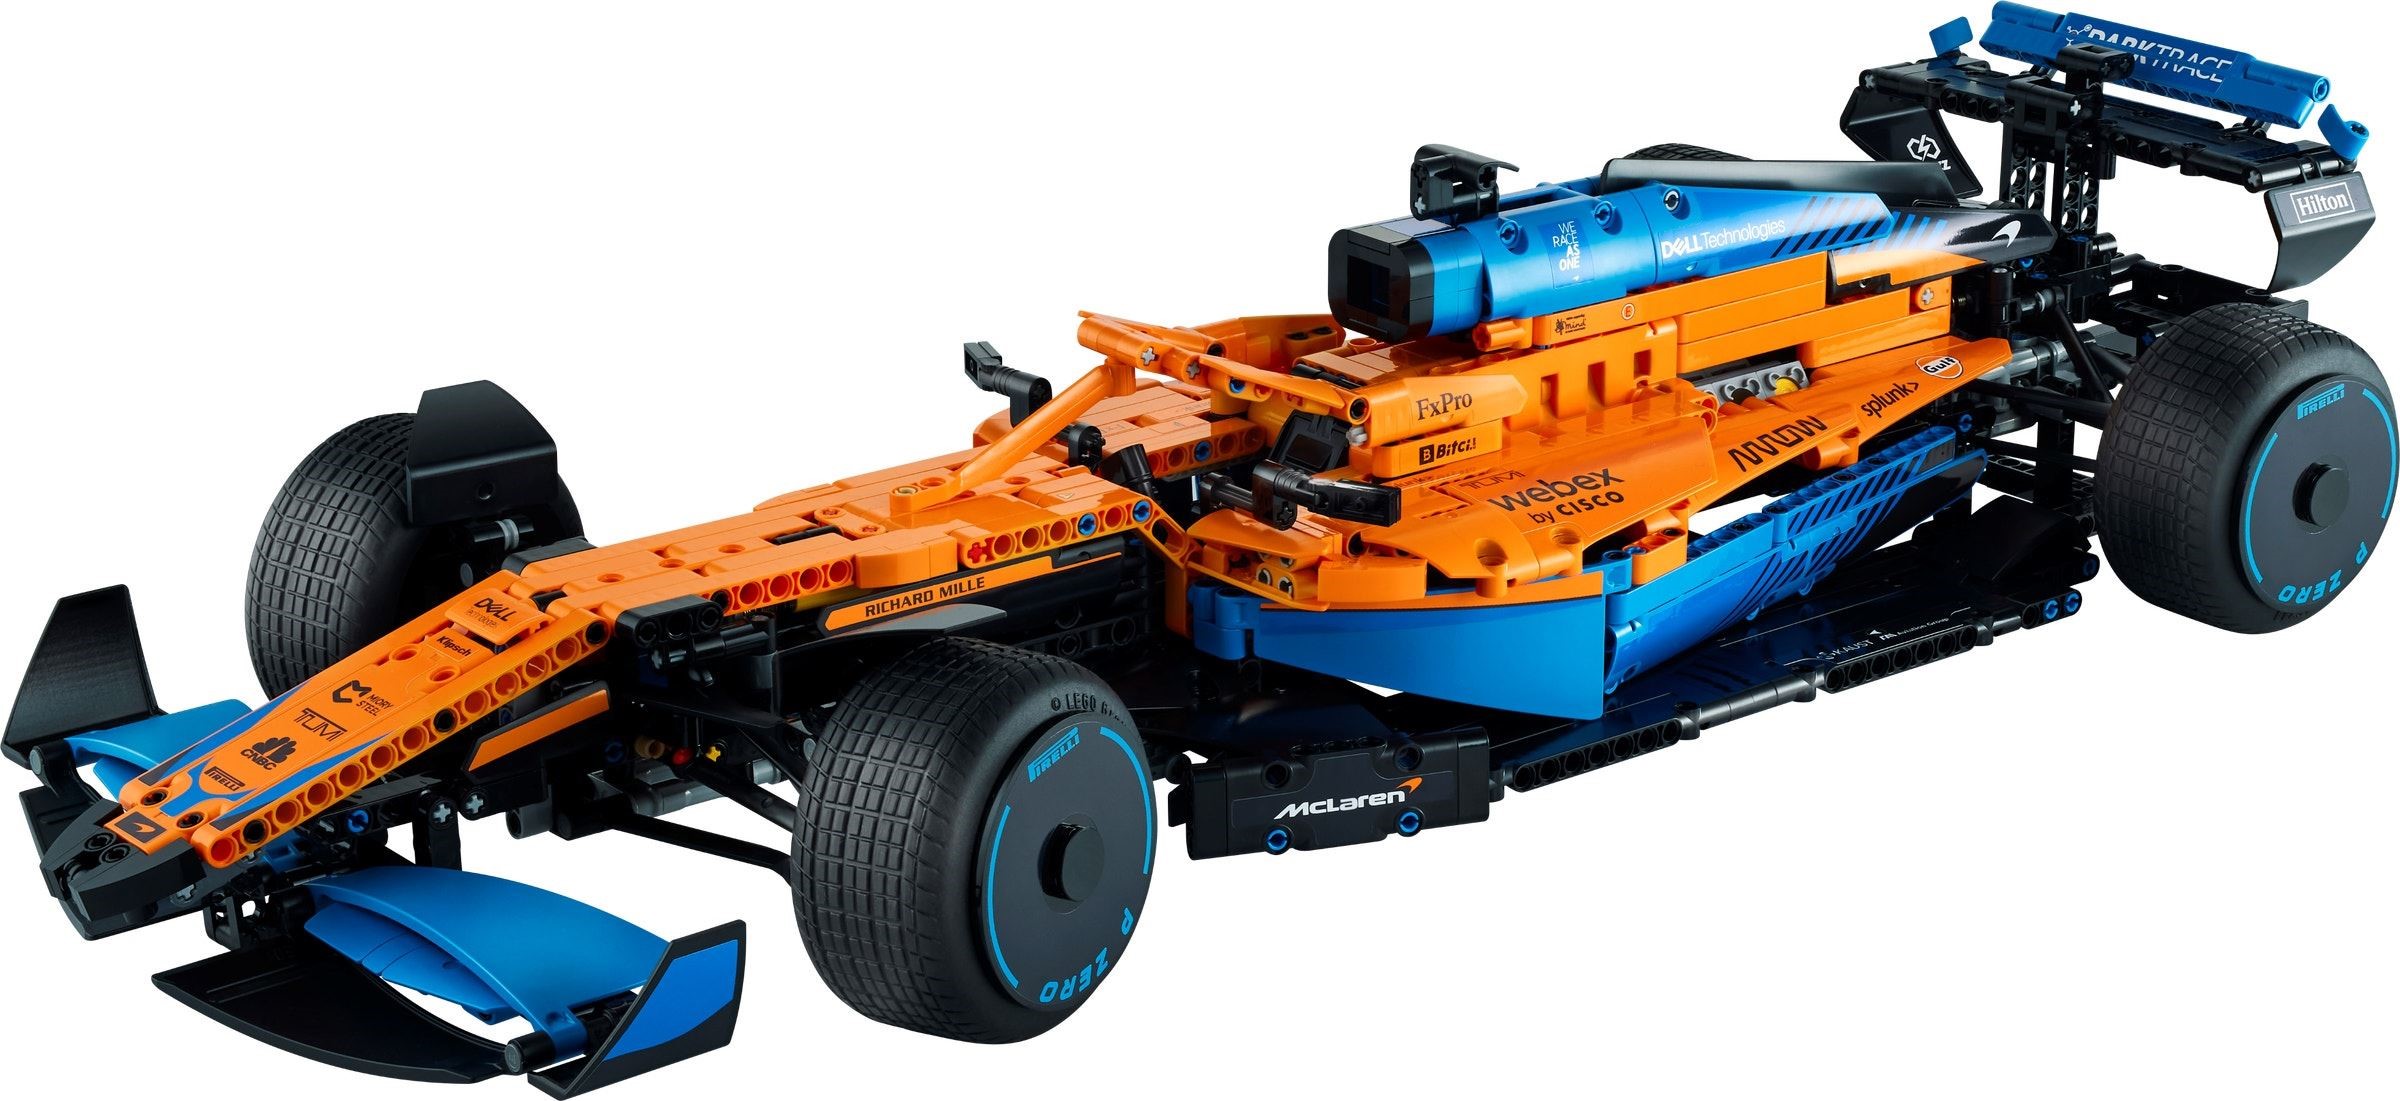 LEGO heeft de Technic McLaren F1-set officieel onthuld